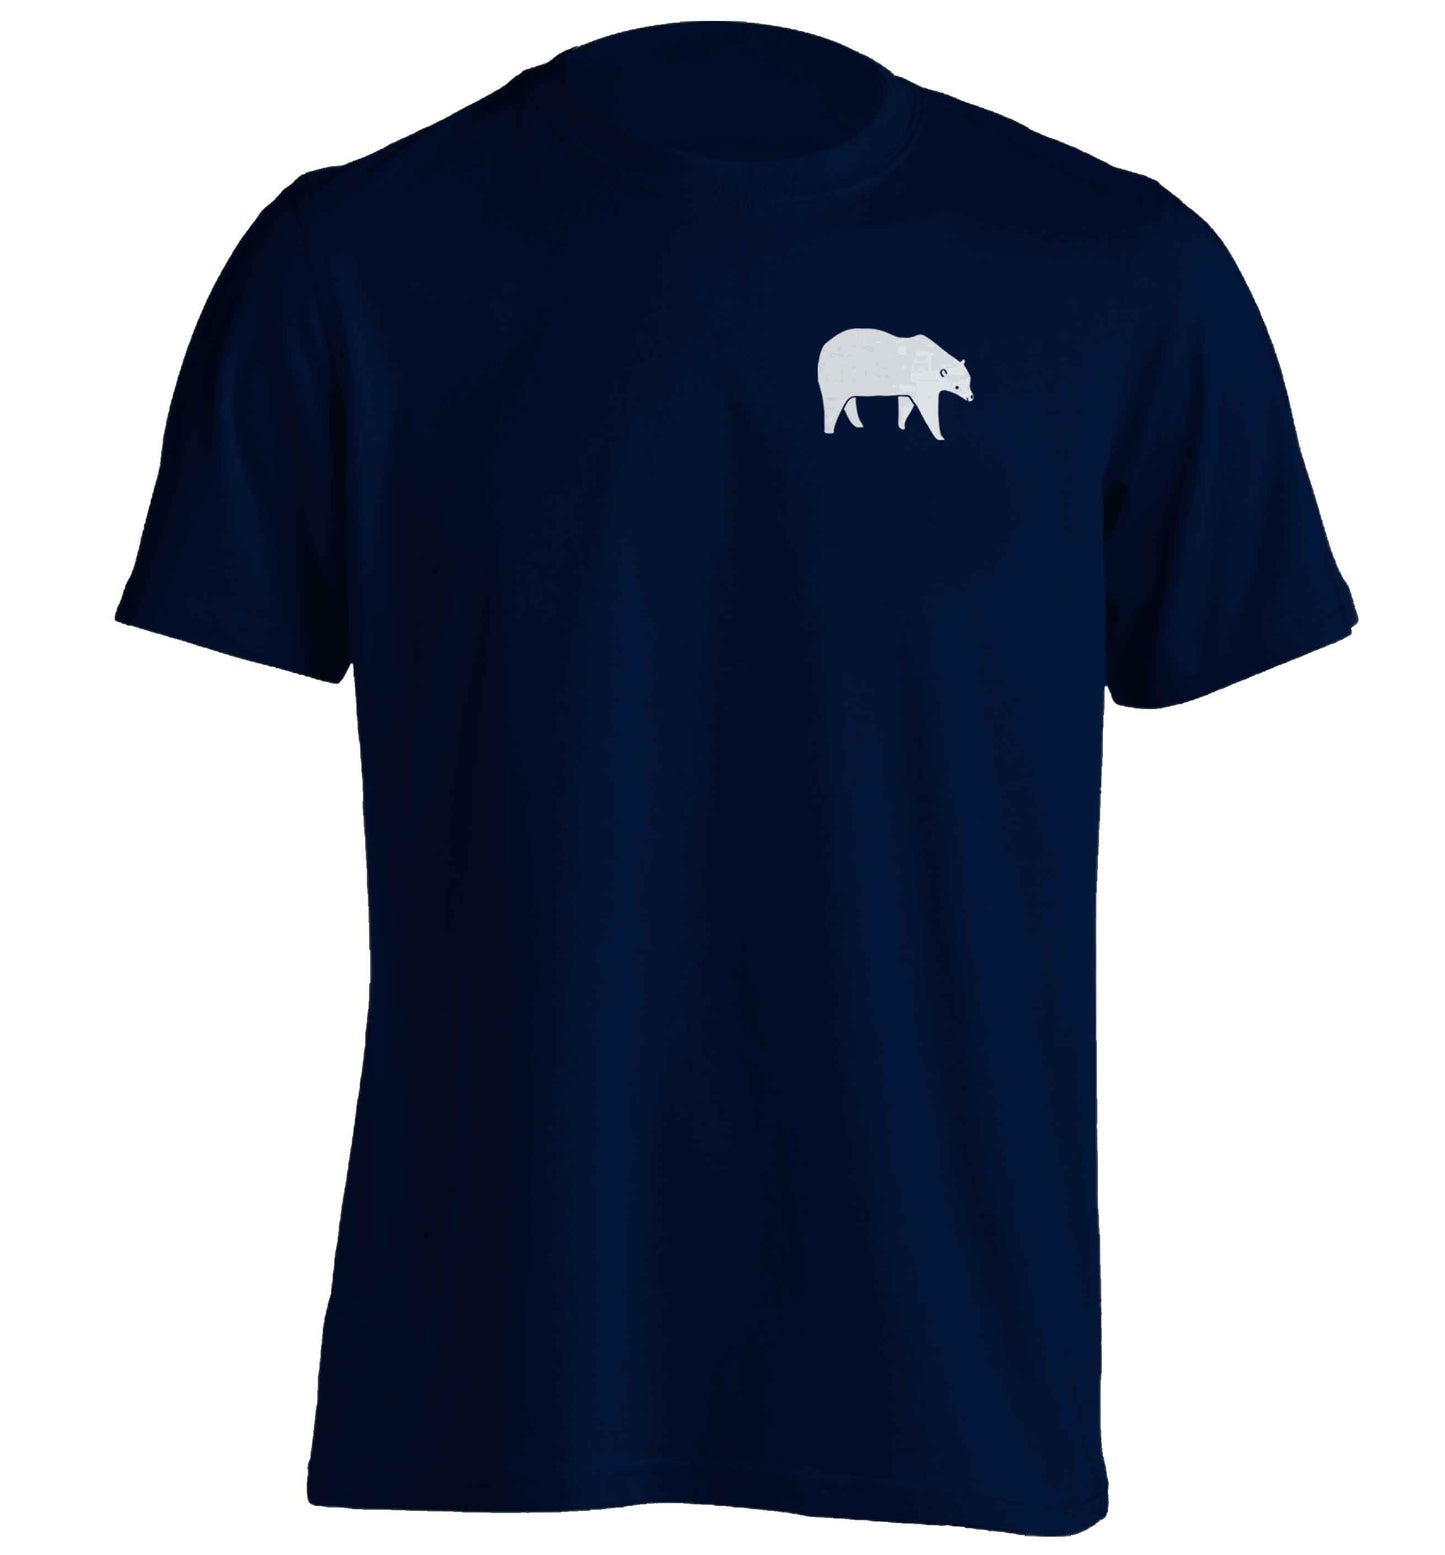 Polar Bear Kit adults unisex navy Tshirt 2XL